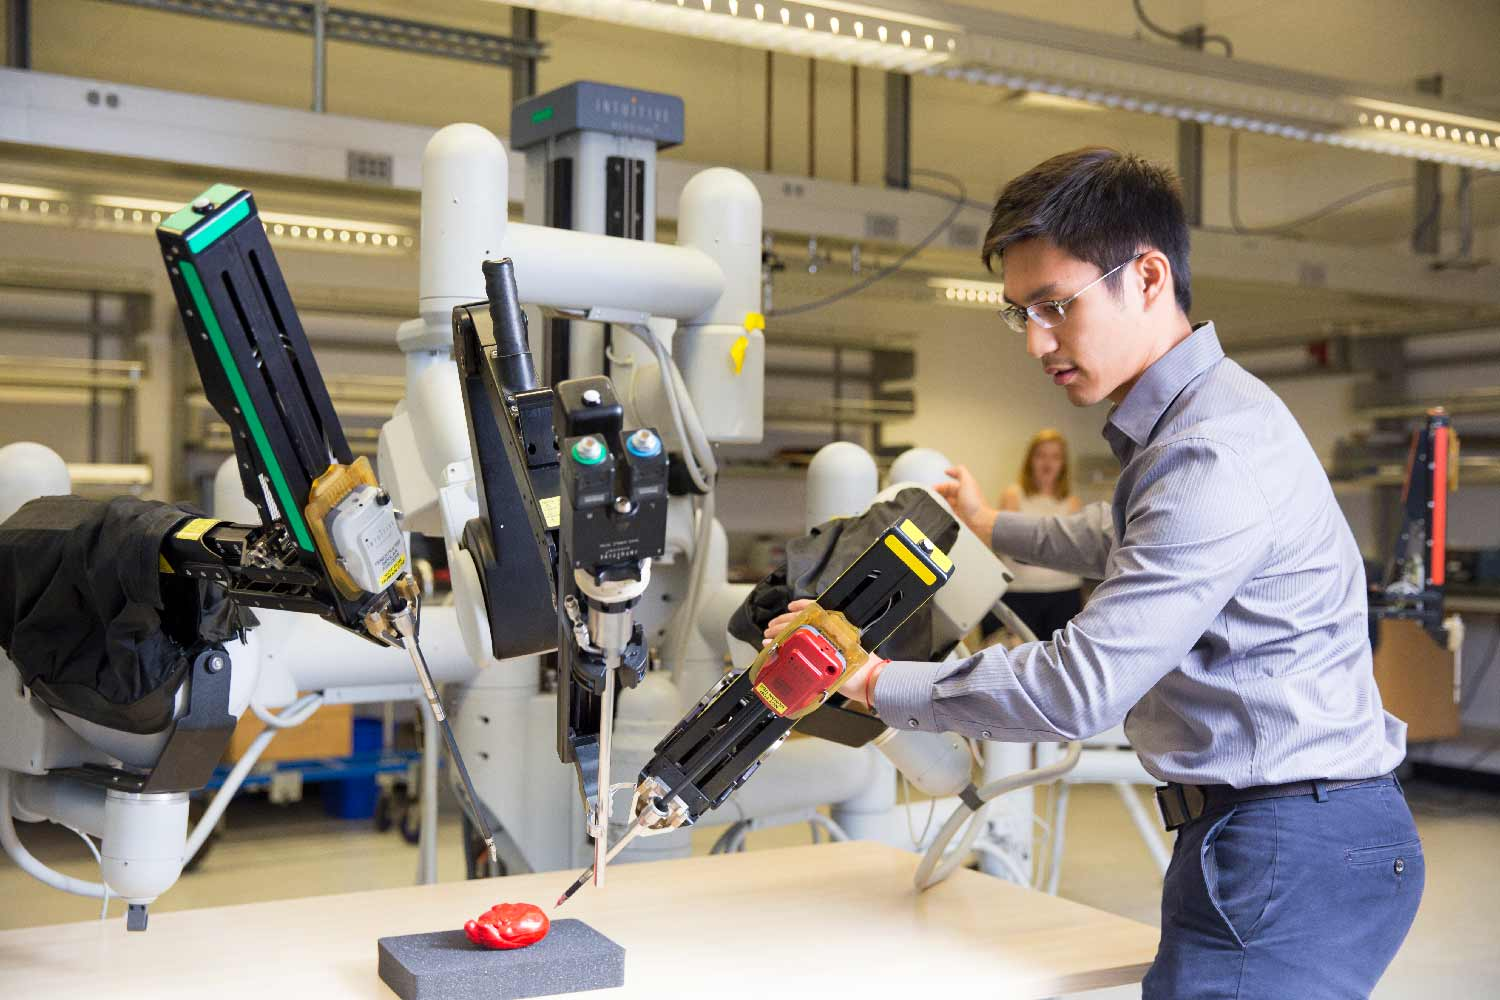 Мир профессий в робототехнике 8 класс проект